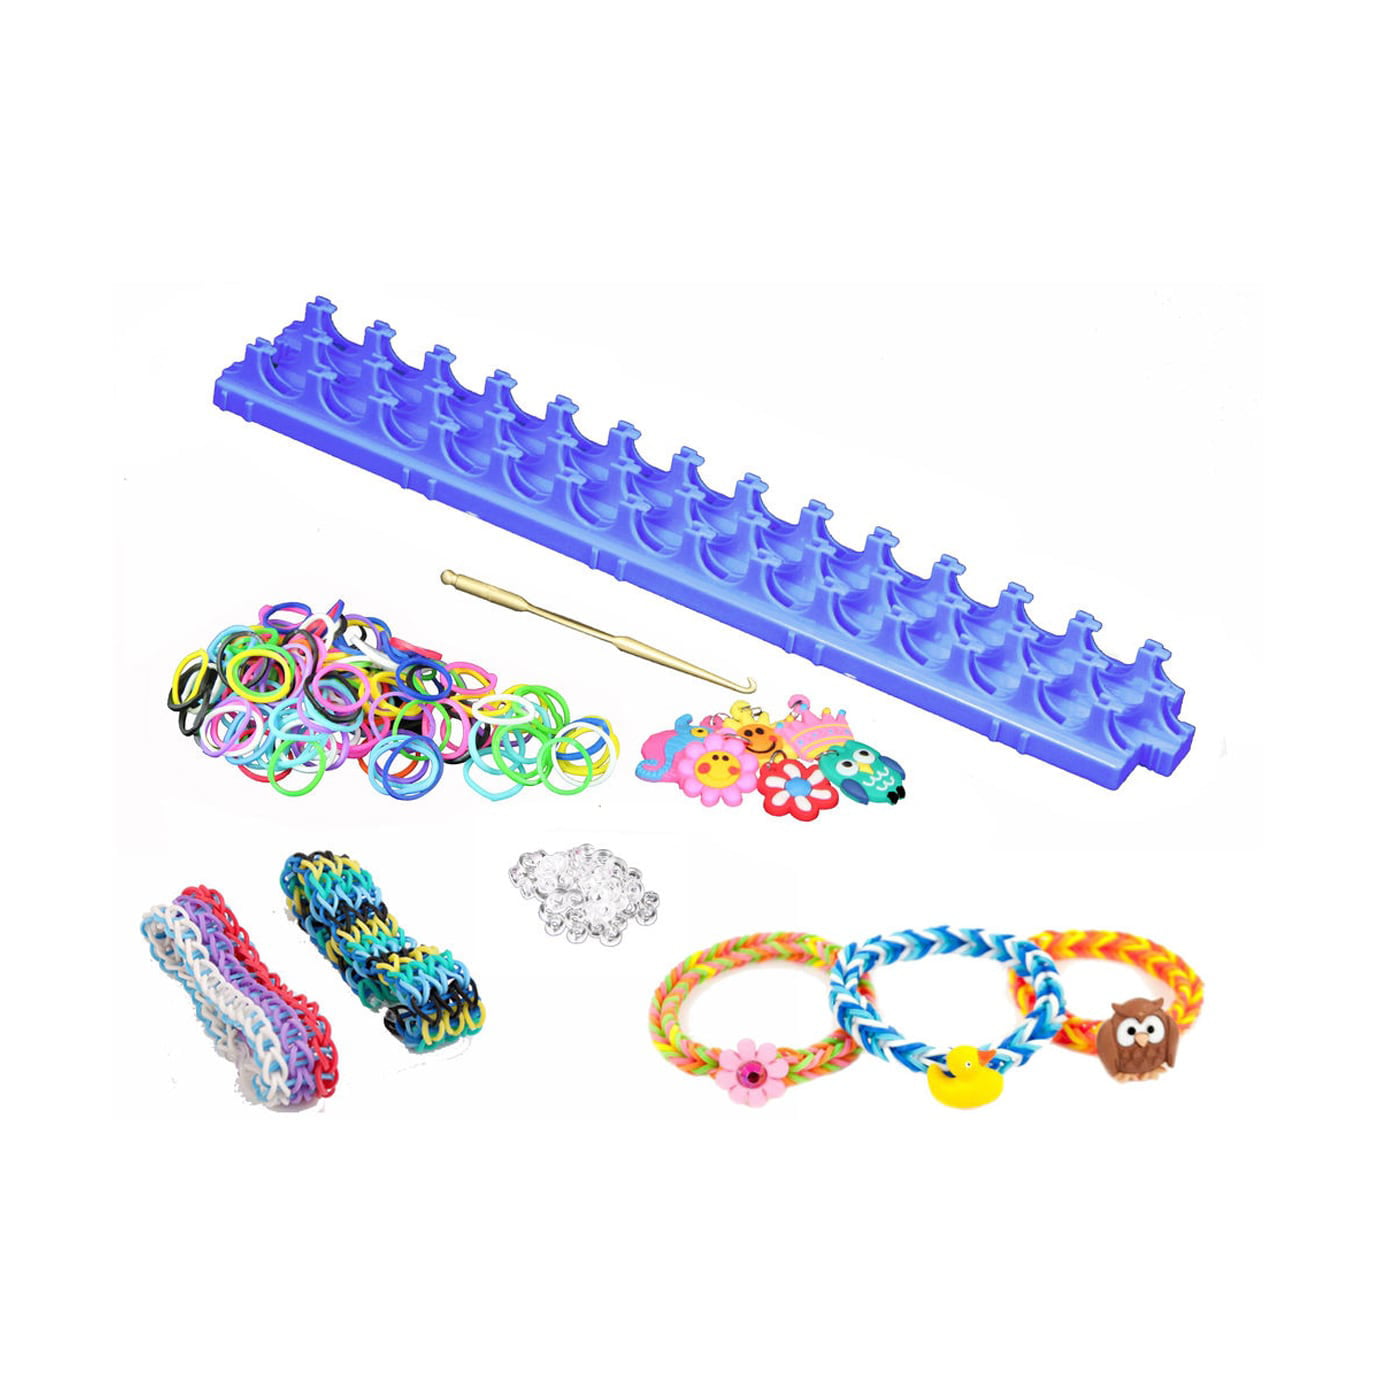 VENSEEN Rubber Band Bracelet Kit, 12000+ Loom Bracelet Making Kit